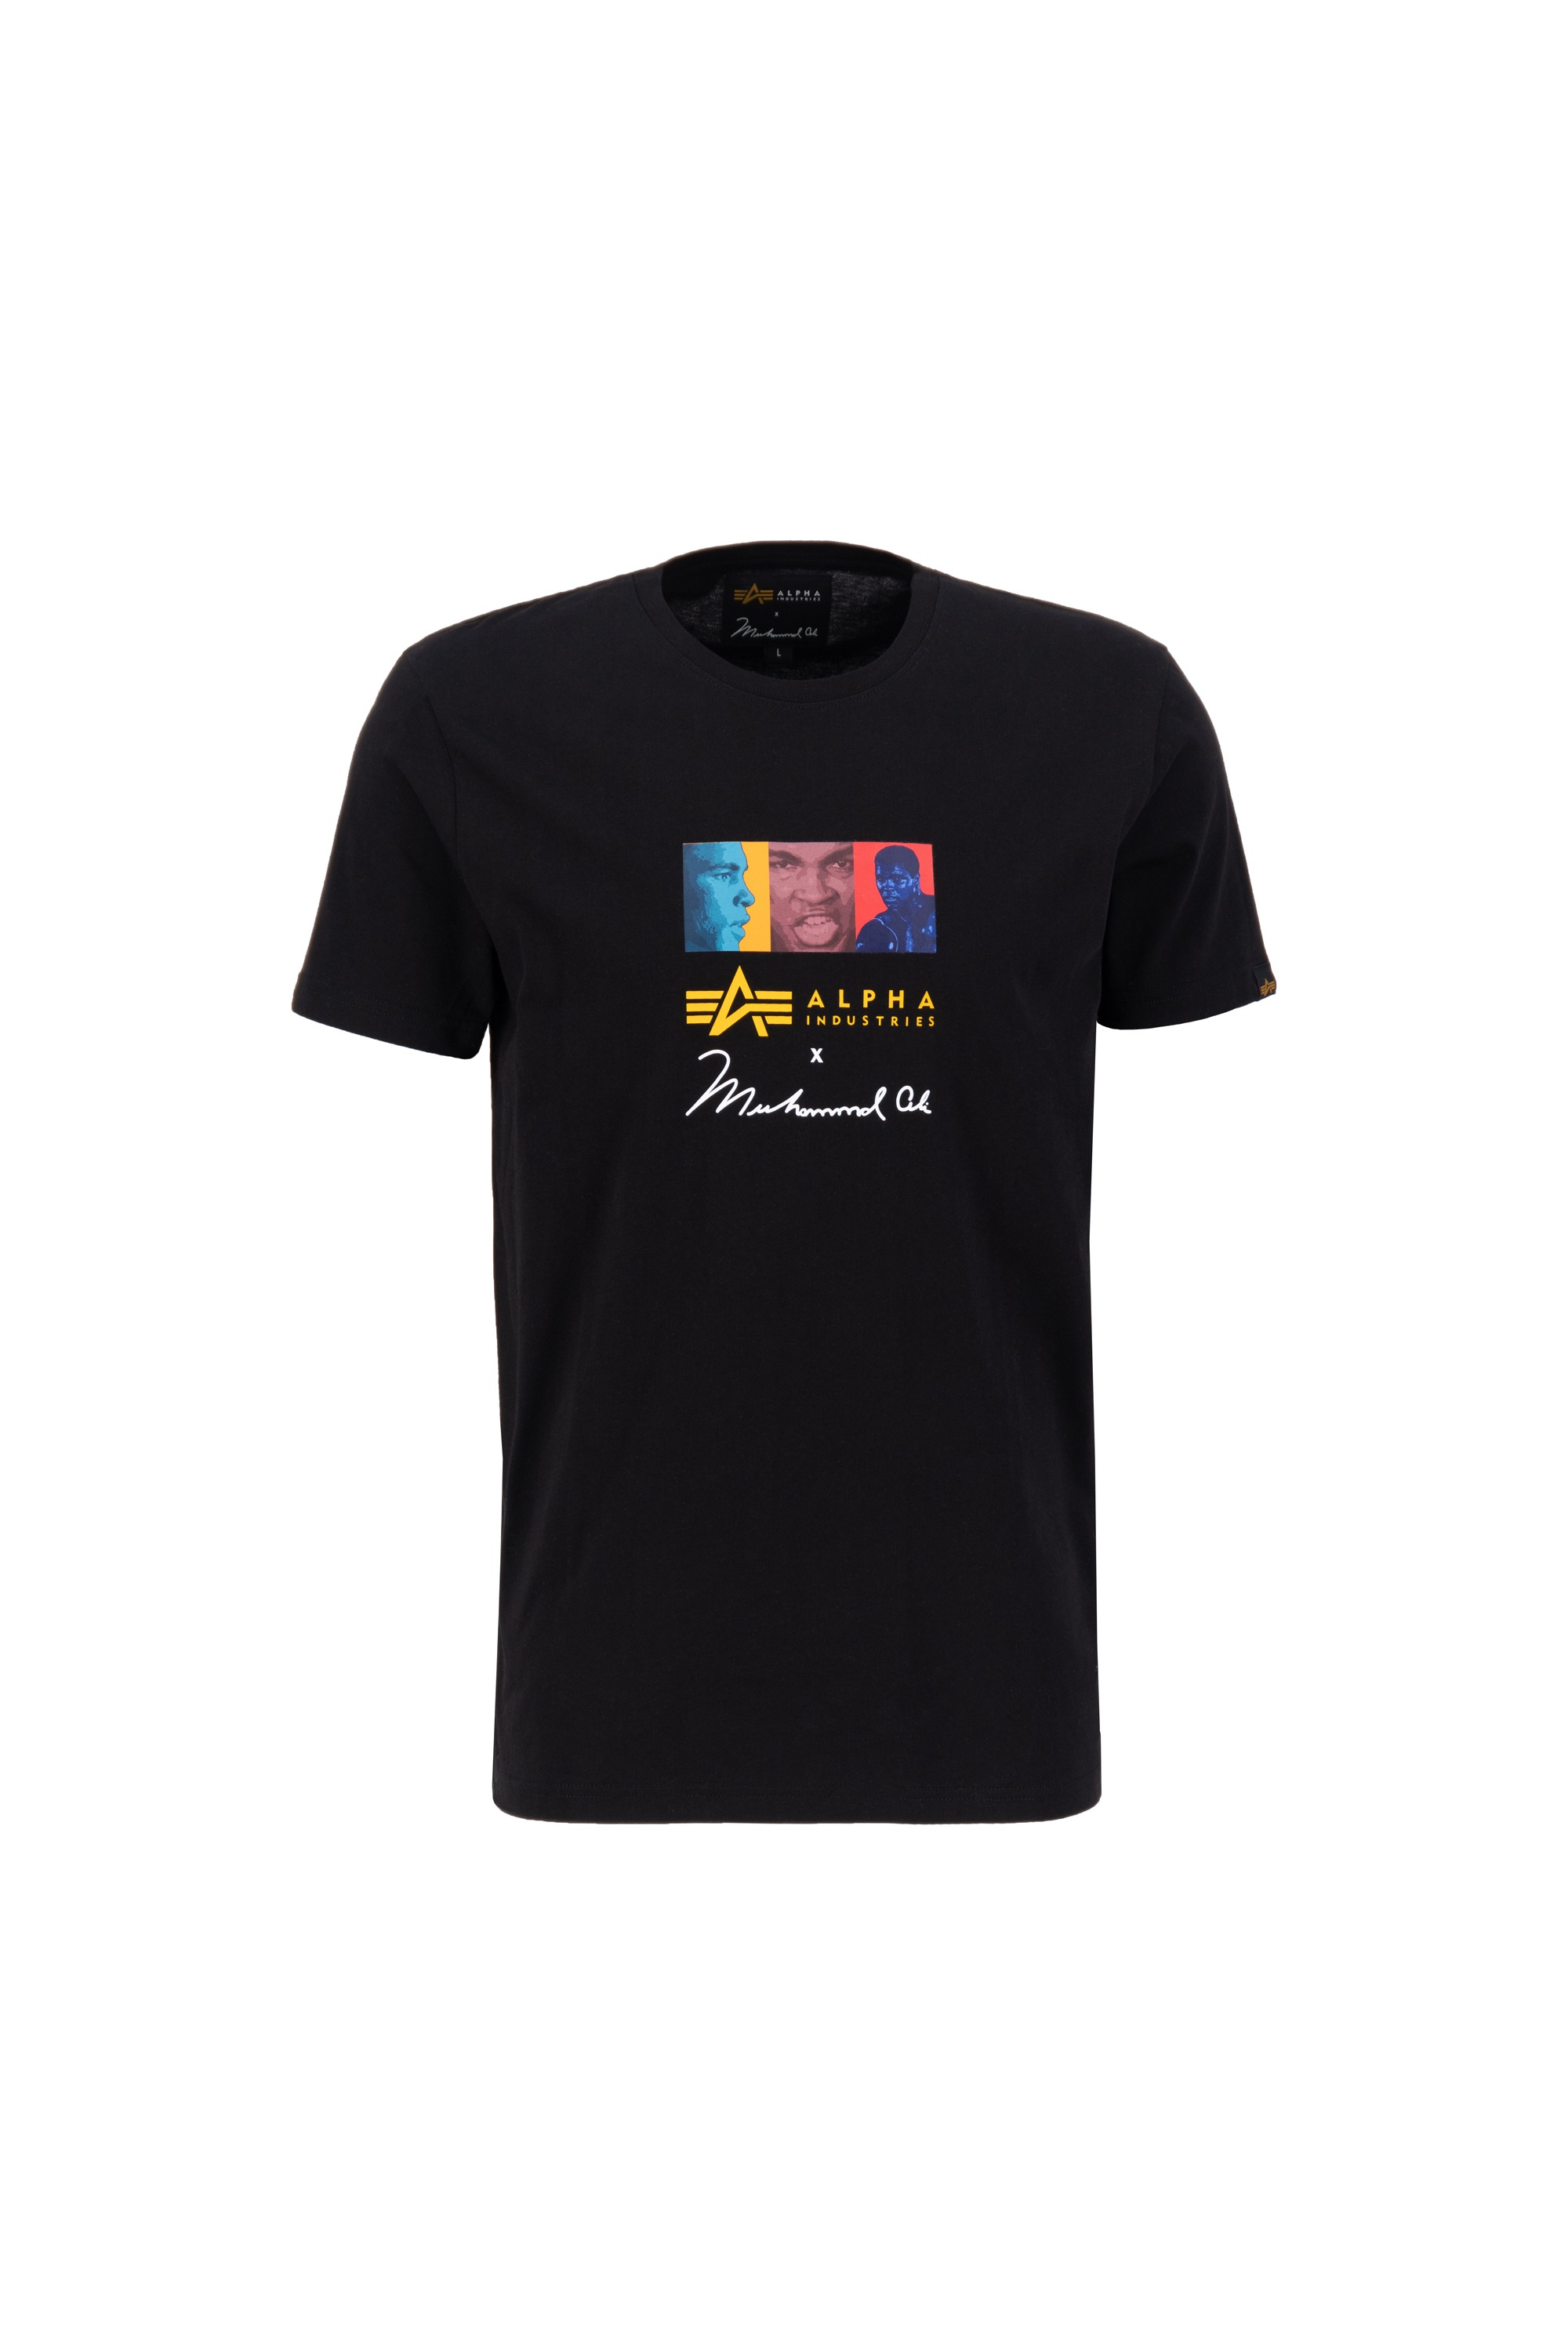 T« Art Ali Industries - Muhammad T-Shirts »Alpha T-Shirt bestellen Pop Men Industries online Alpha